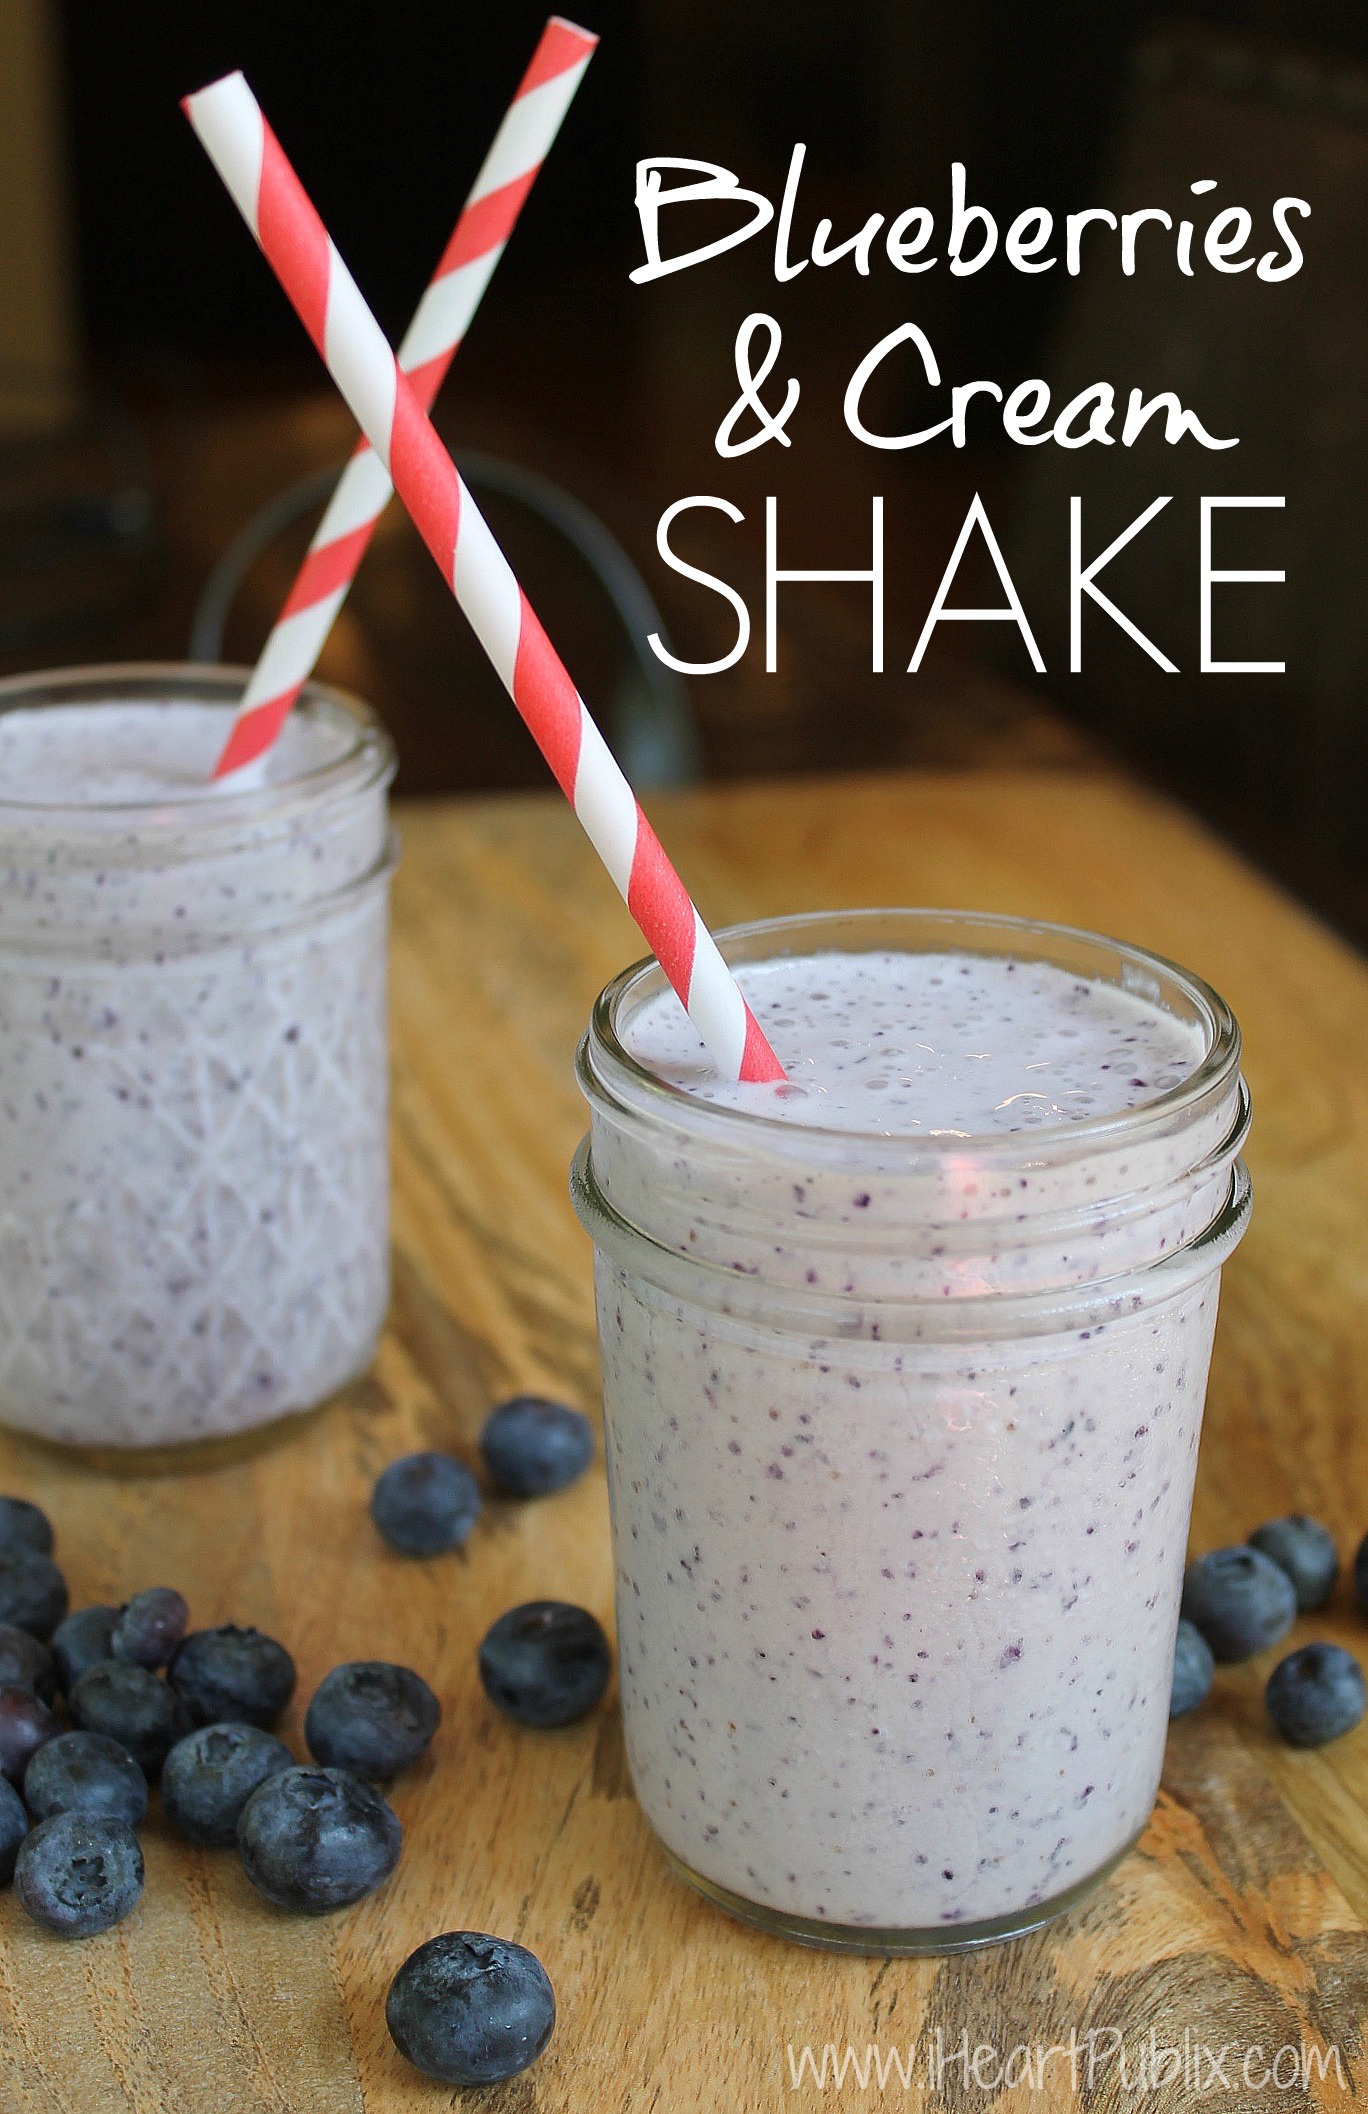 Blueberries & Cream Shake